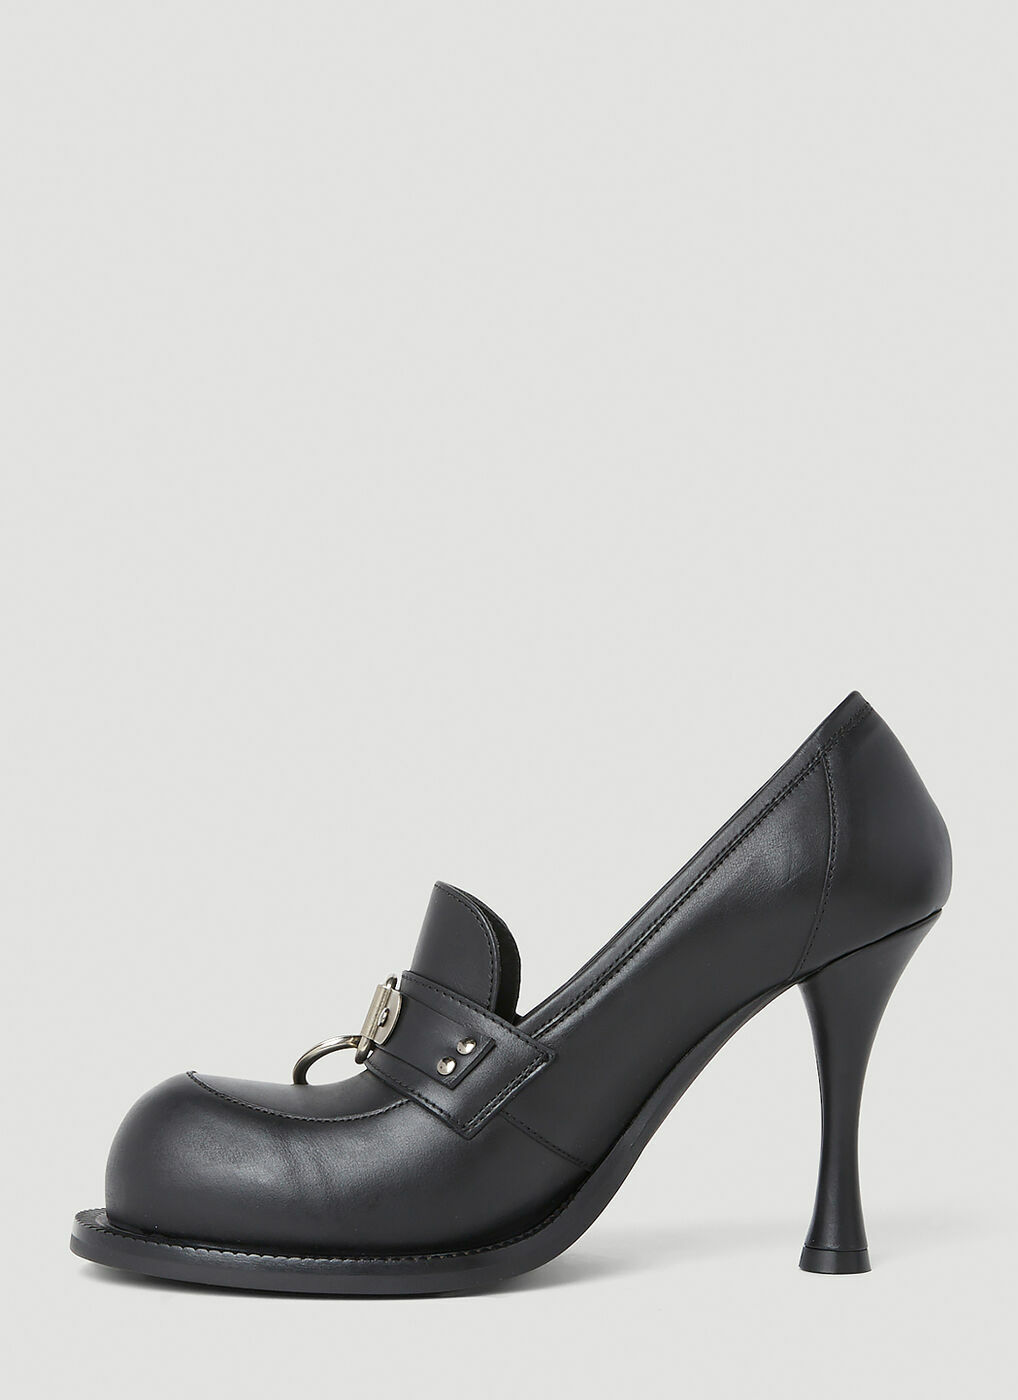 Martine Rose - Bulg High Heel Shoes in Black Martine Rose